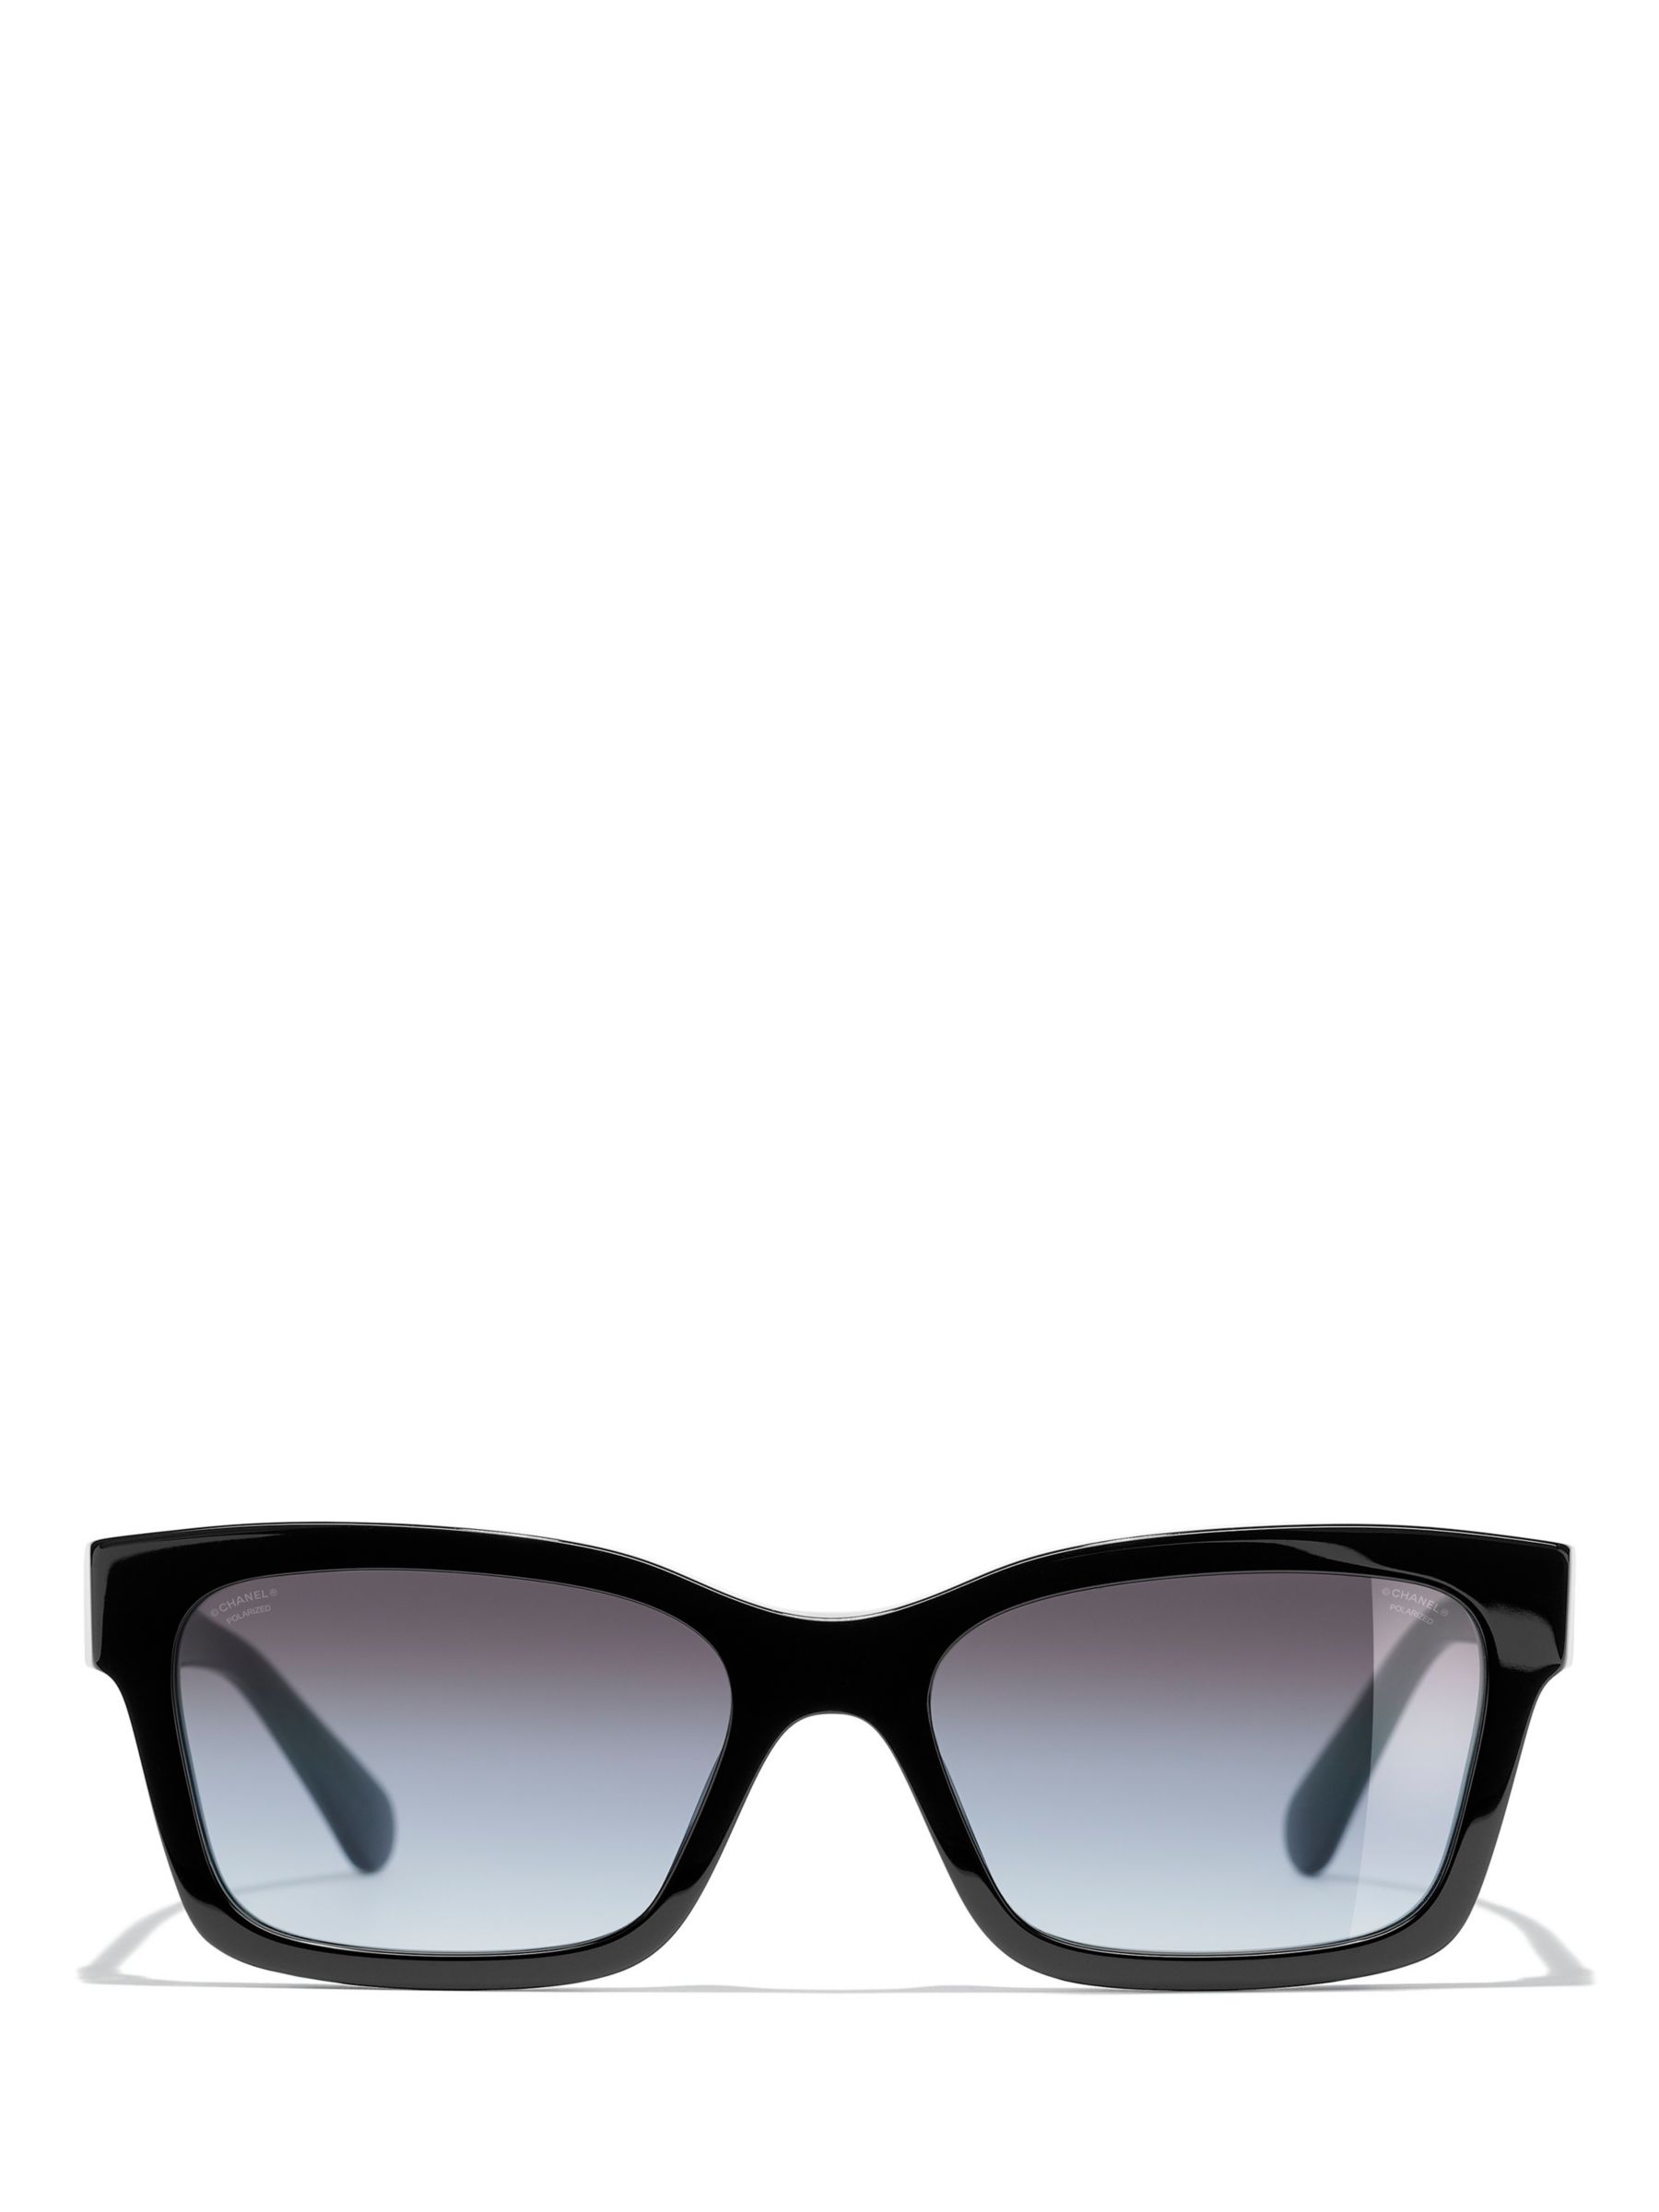 Chanel Square Sunglasses CH5417 54 Brown & Black & Beige Sunglasses